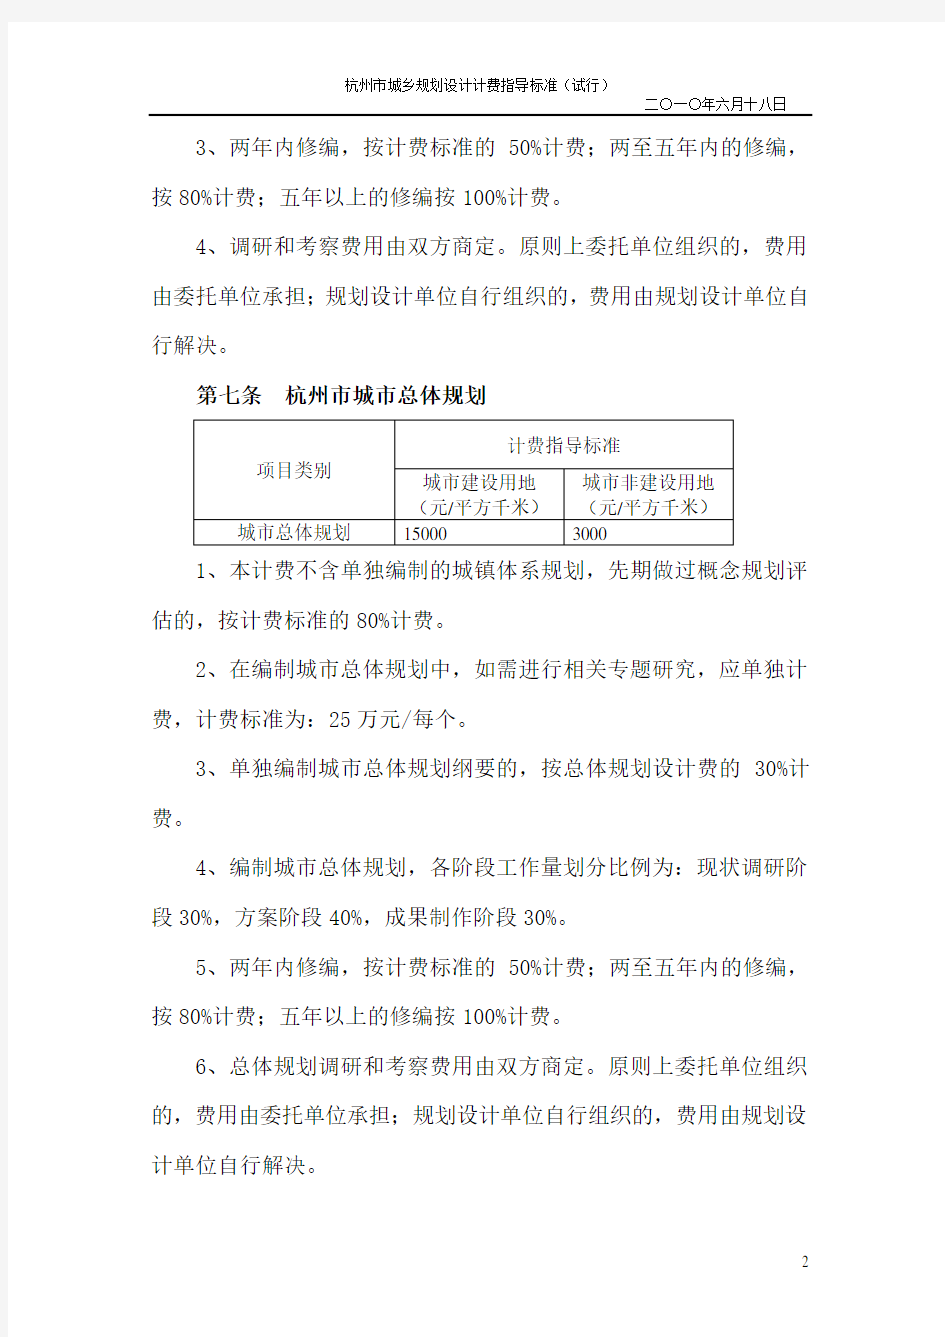 杭州市城乡规划设计计费指导标准(试行)(第十二次修改稿)